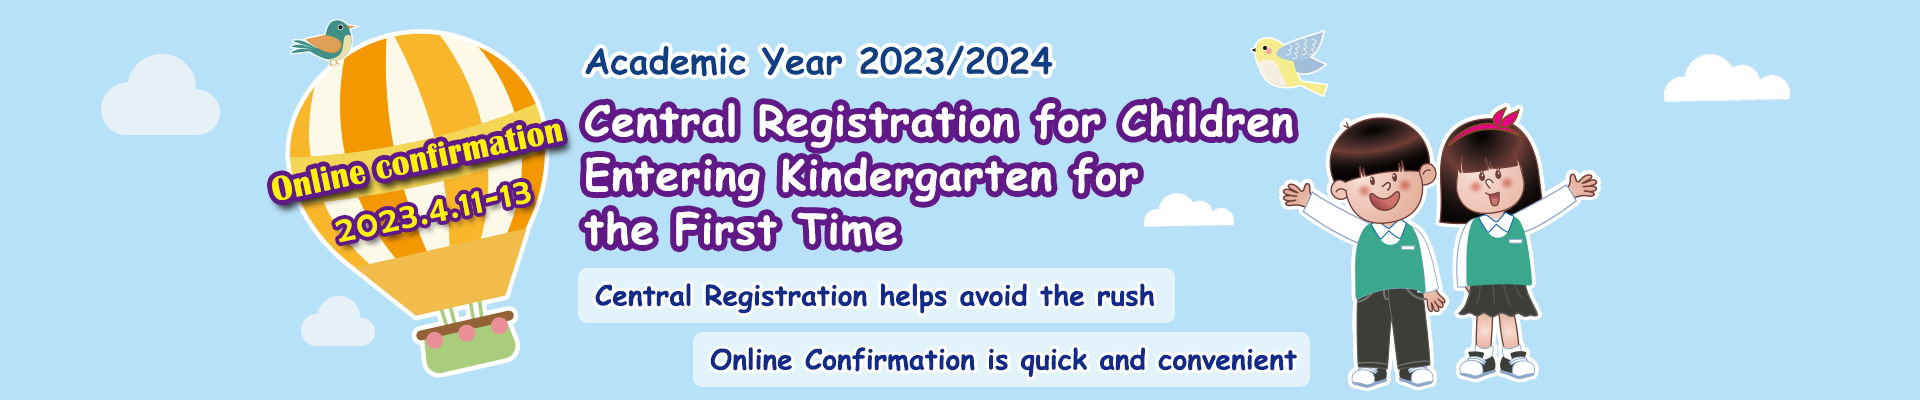 Central Registration for Children Entering Kindergarten for the First Time - 2023/2024